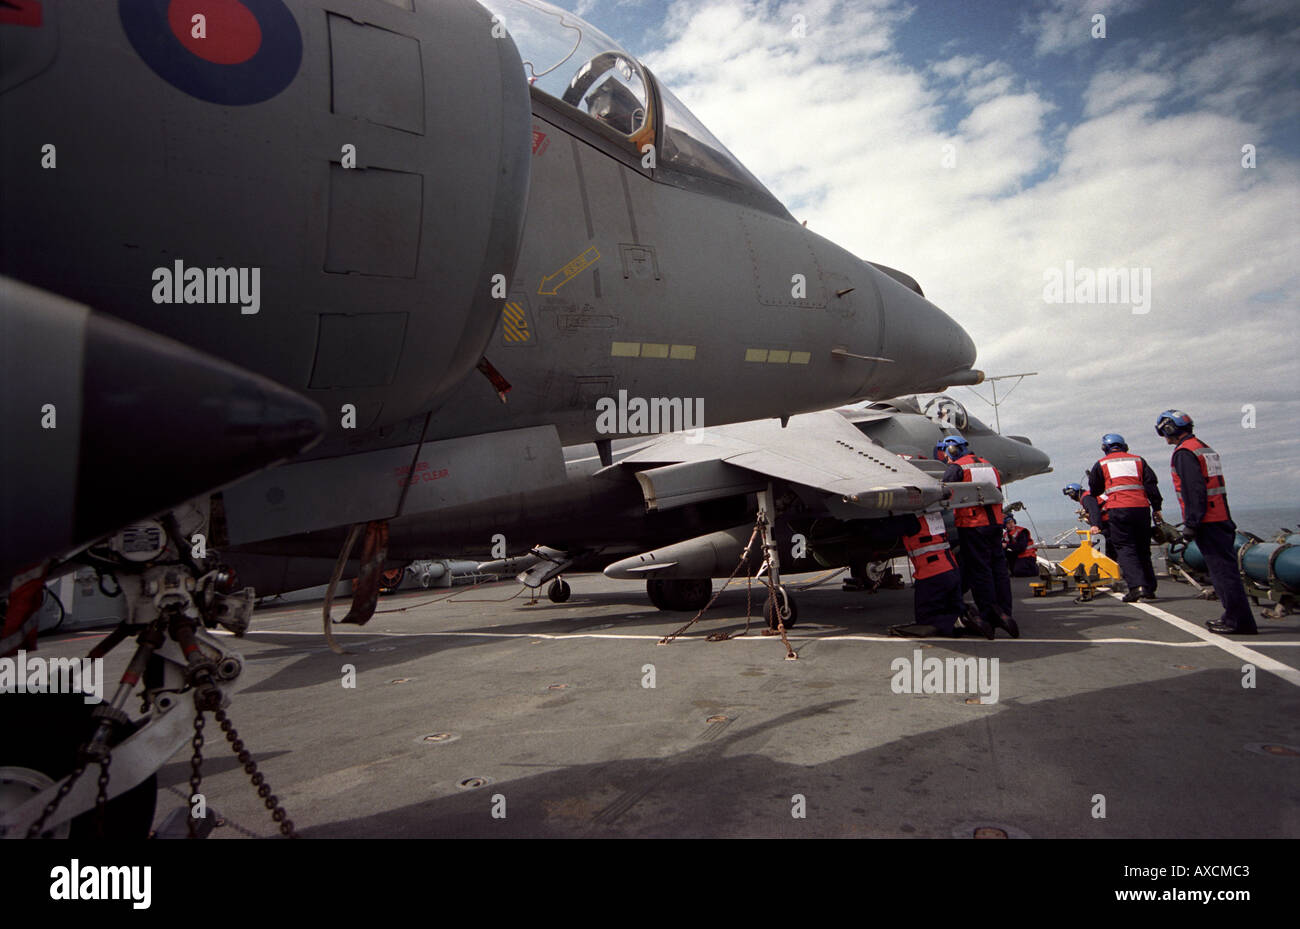 RAF Waffenschmiede zu bombardieren, bis ein Harrier GR7 s von 1 Sqn RAF auf dem Flugzeugträger der Royal Navy HMS Illustrious Stockfoto